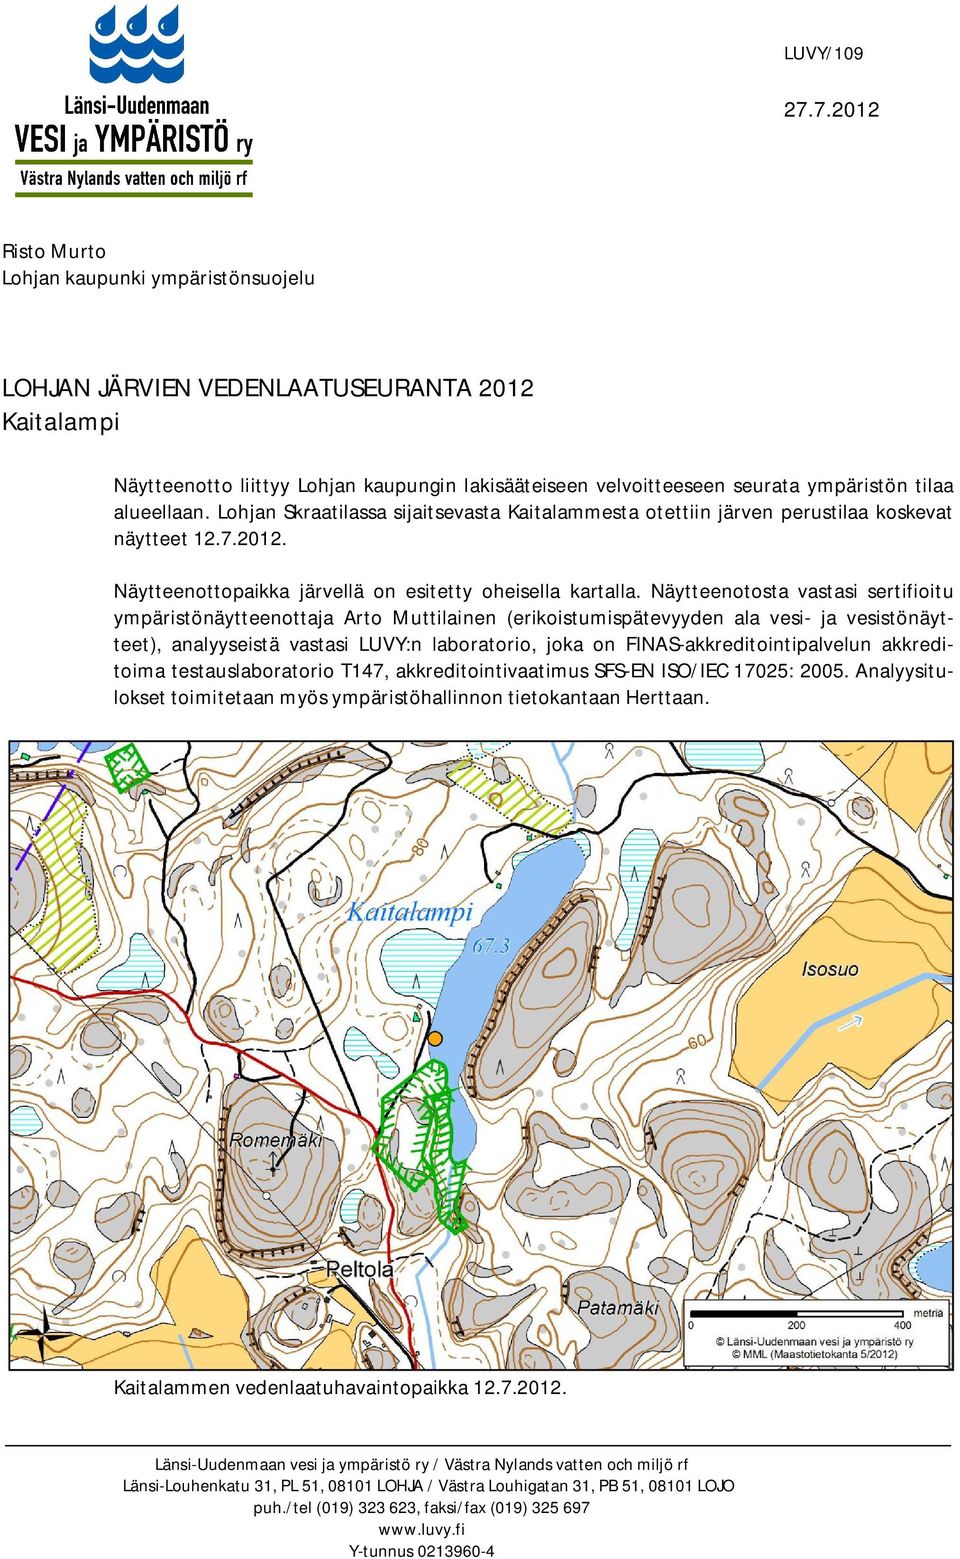 alueellaan. Lohjan Skraatilassa sijaitsevasta Kaitalammesta otettiin järven perustilaa koskevat näytteet 12.7.2012. Näytteenottopaikka järvellä on esitetty oheisella kartalla.